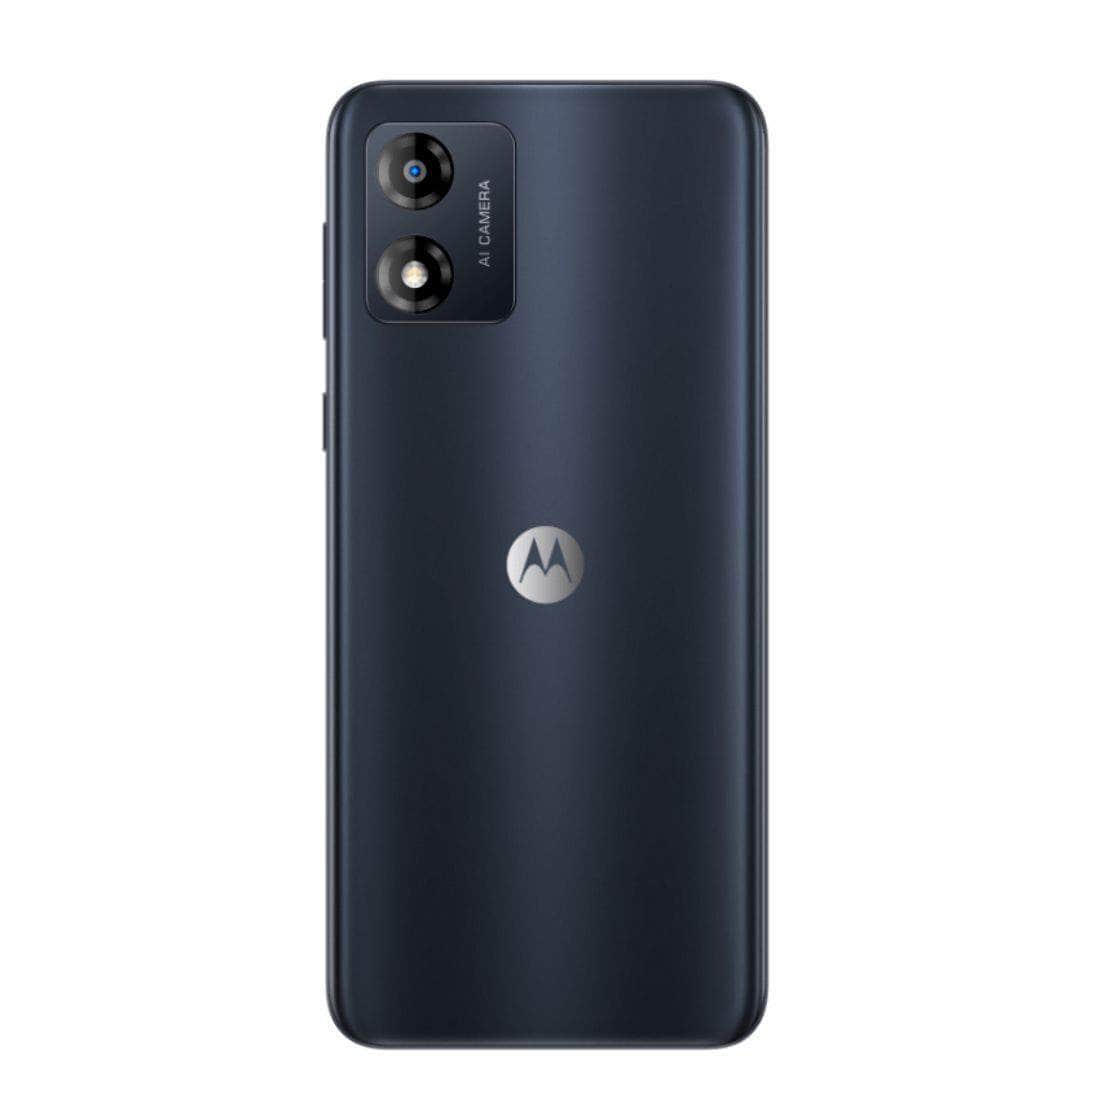 Motorola E13 (Dual Sim, 6.5 inches, 64GB/2GB) - Cosmic Black